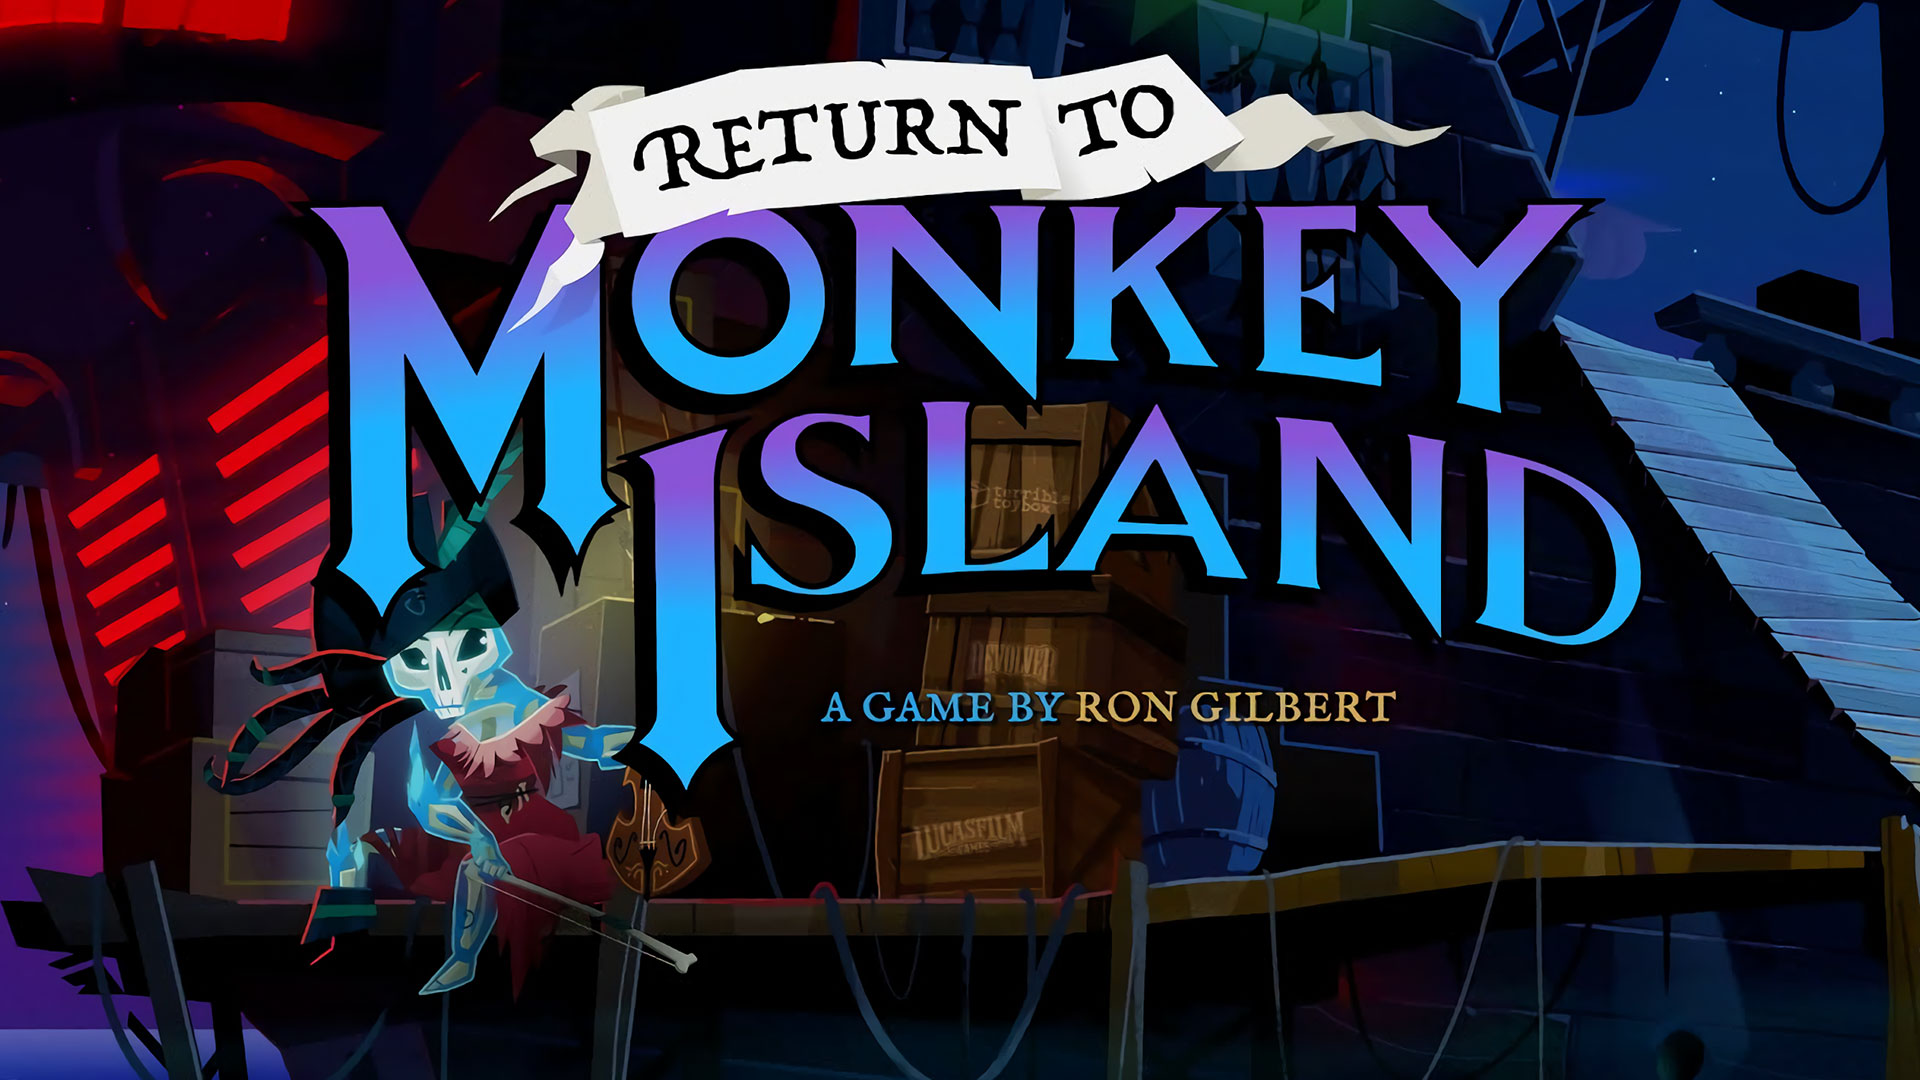 Keer dit jaar terug naar klassieke piratenavonturen met Return to Monkey Island